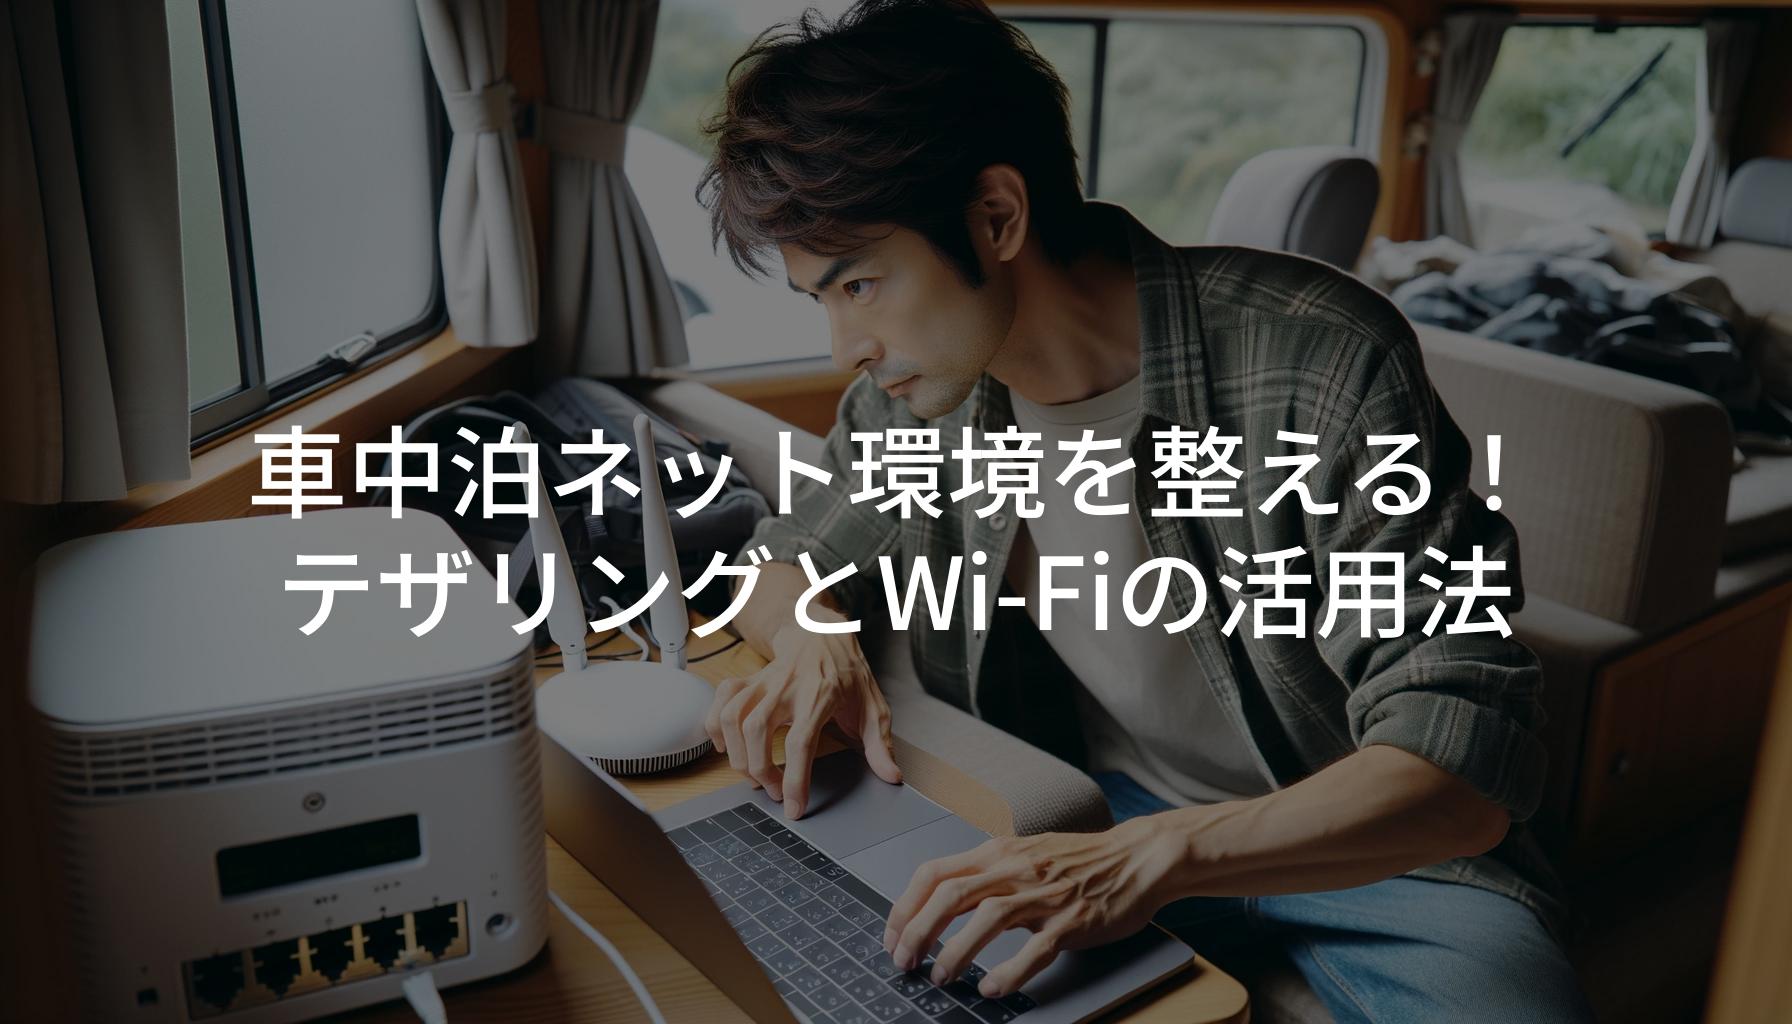 車中泊をしながらWi-Fiルーターを設定している30代の日本人男性。キャンピングカー内で、ノートパソコンとWi-Fiルーターを使ってネット環境を整えている様子。テックサビで快適なアウトドアライフを表現。